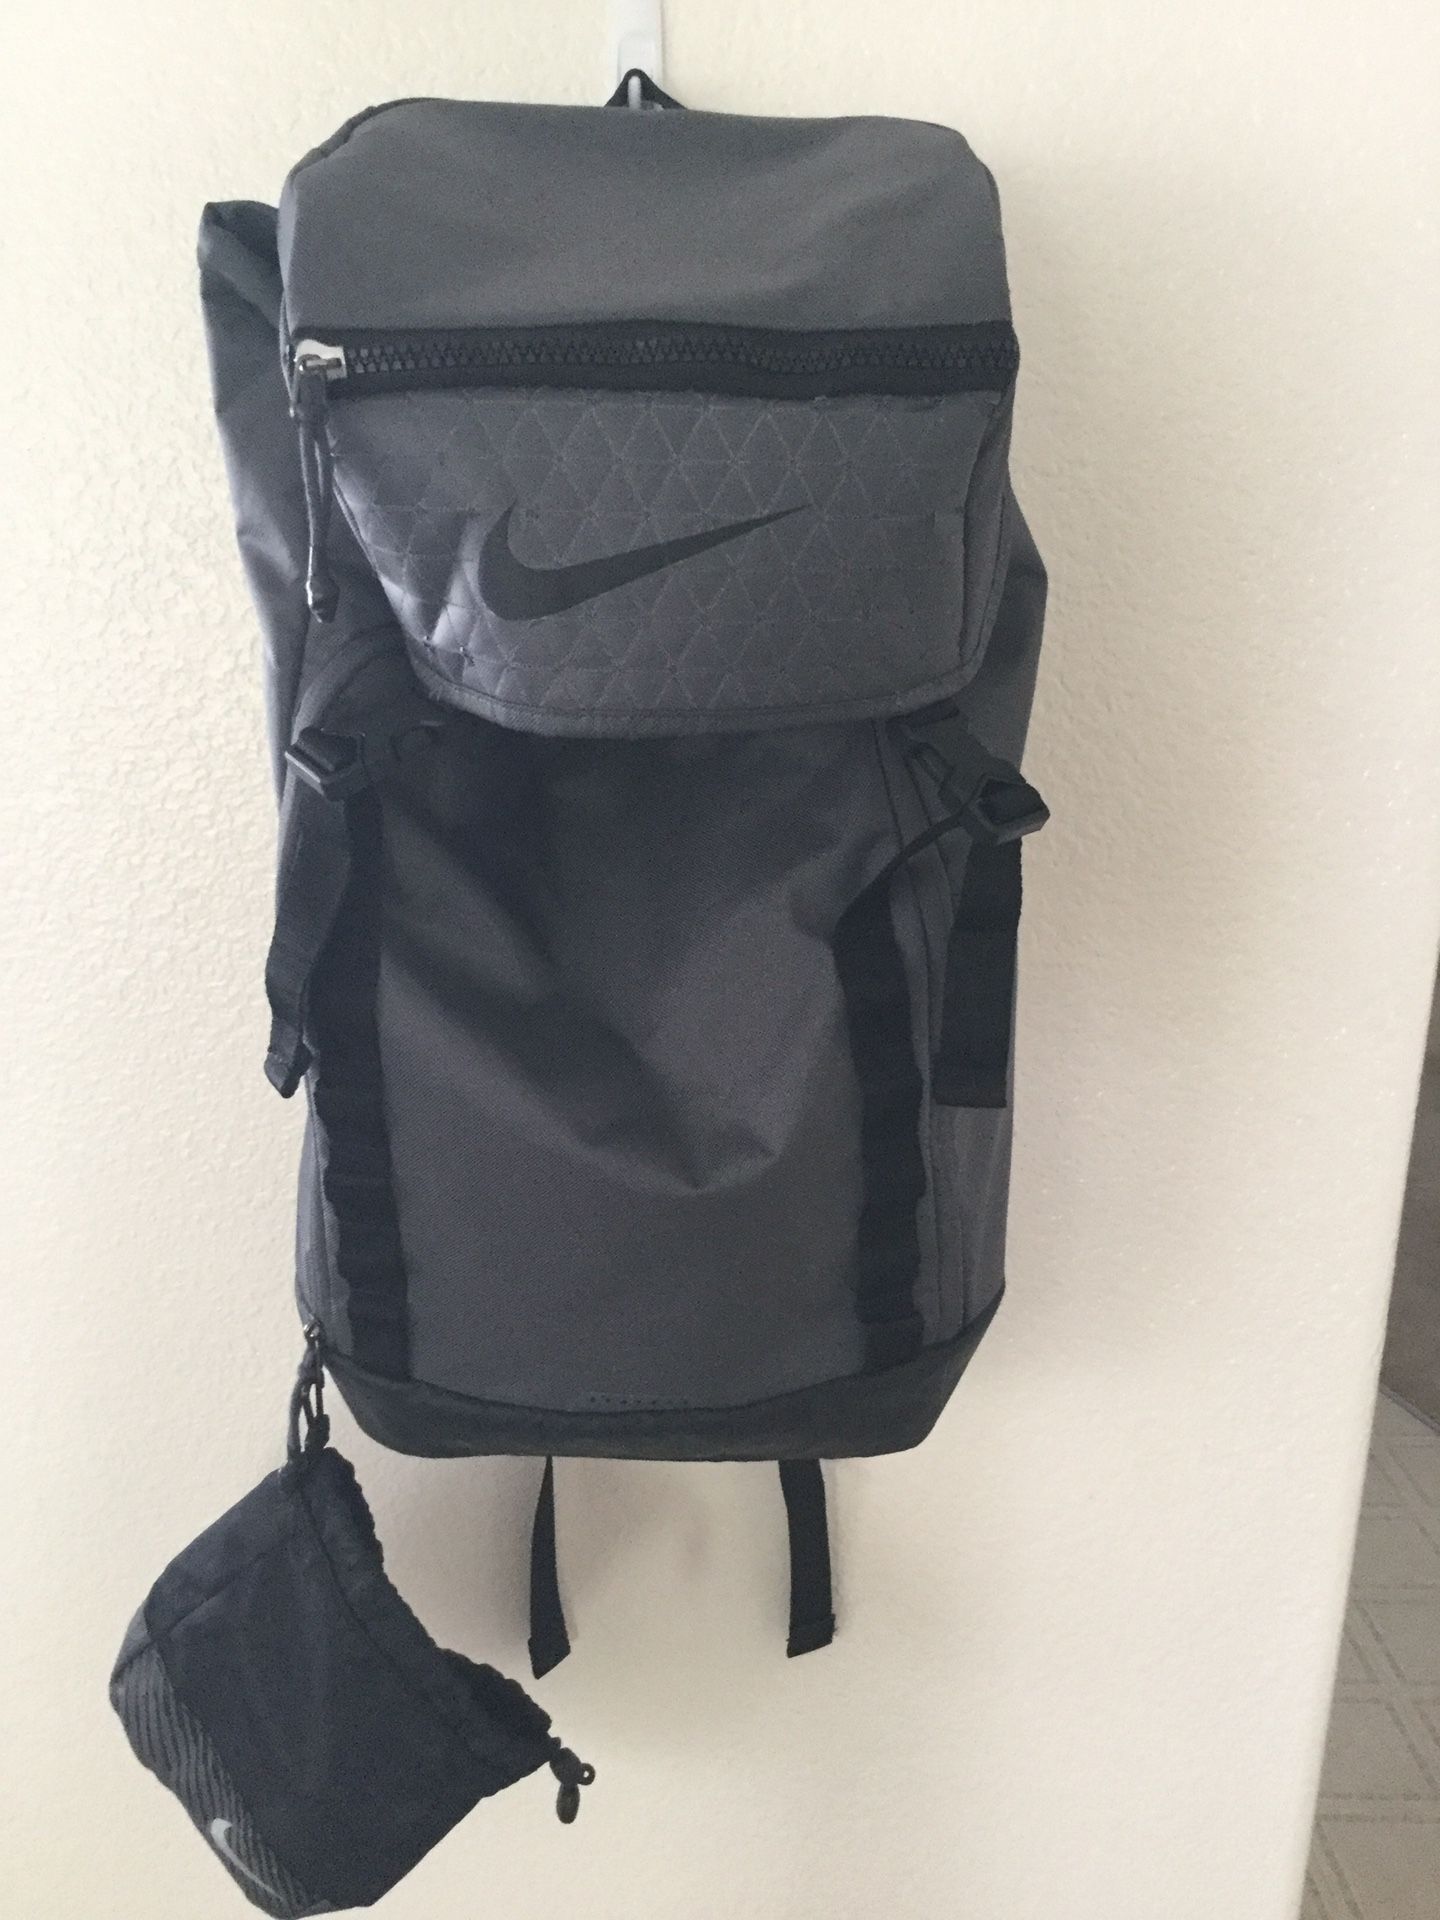 BRAND NEW Nike Vapor Speed Backpack 2.0 Bag Gray Soccer/ Football/Baseball/Hiking/ Fitness Gym Bag 5540-021